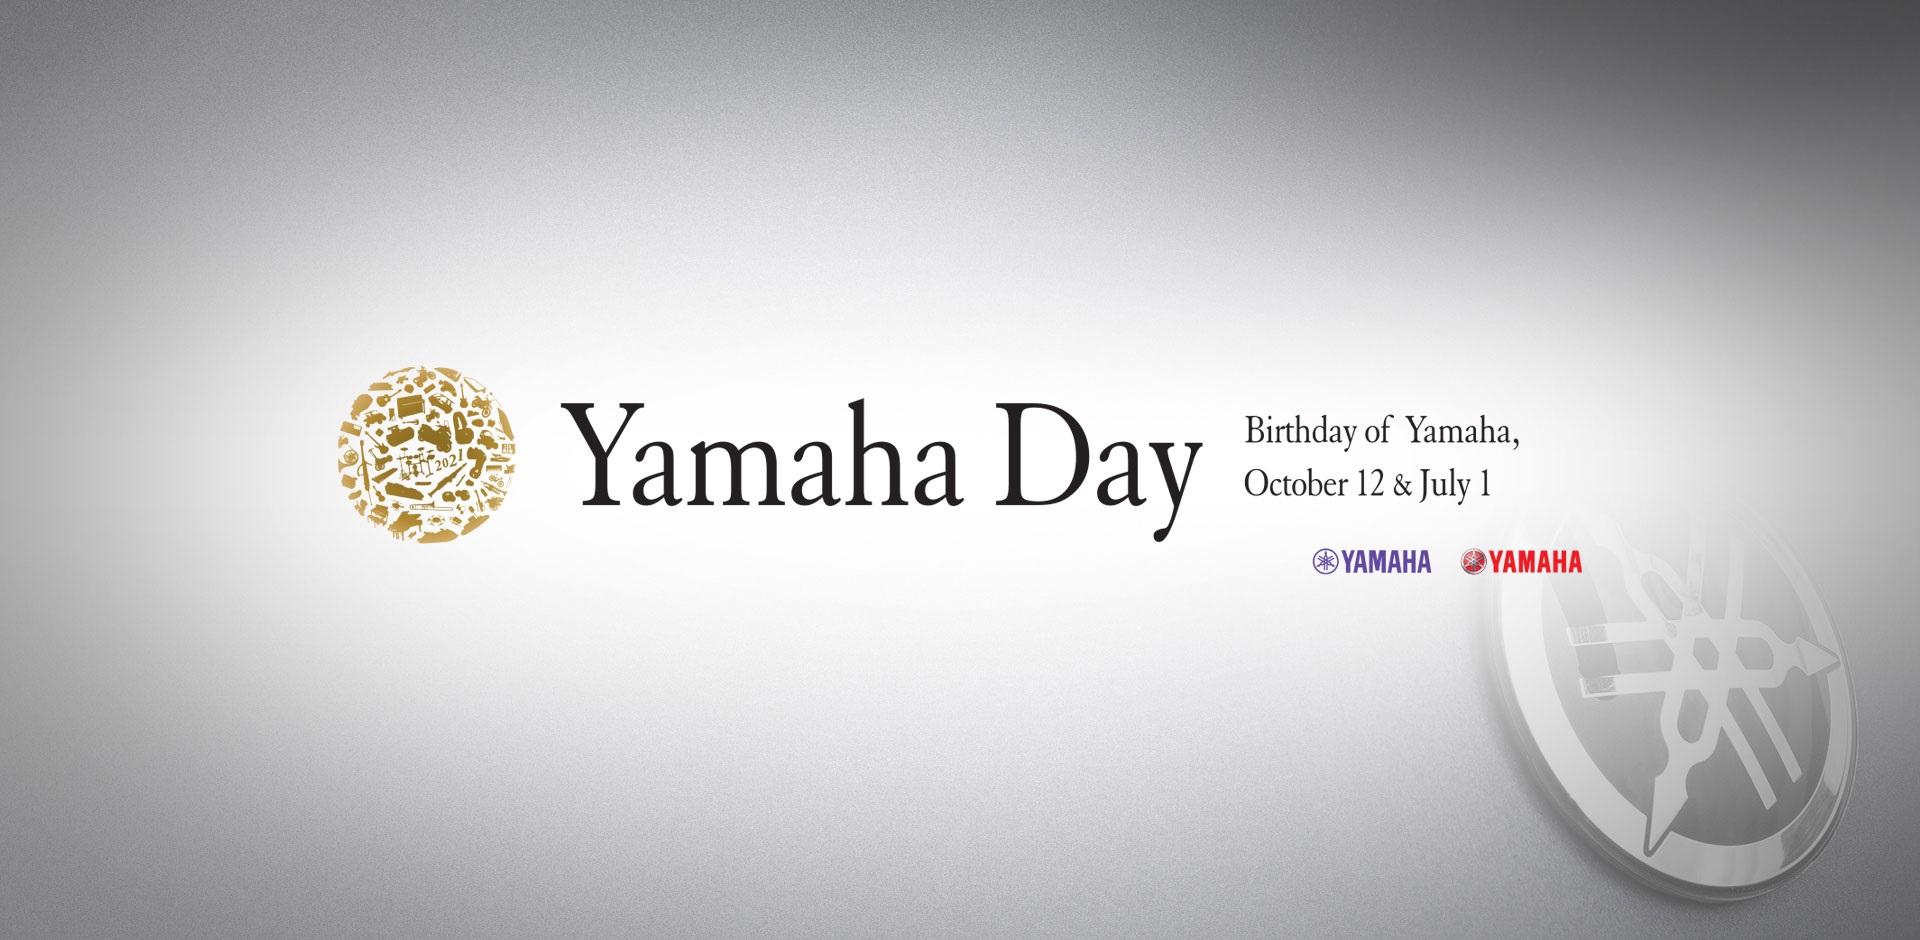 Vì sao Yamaha lại có đến tận 2 ngày sinh nhật?